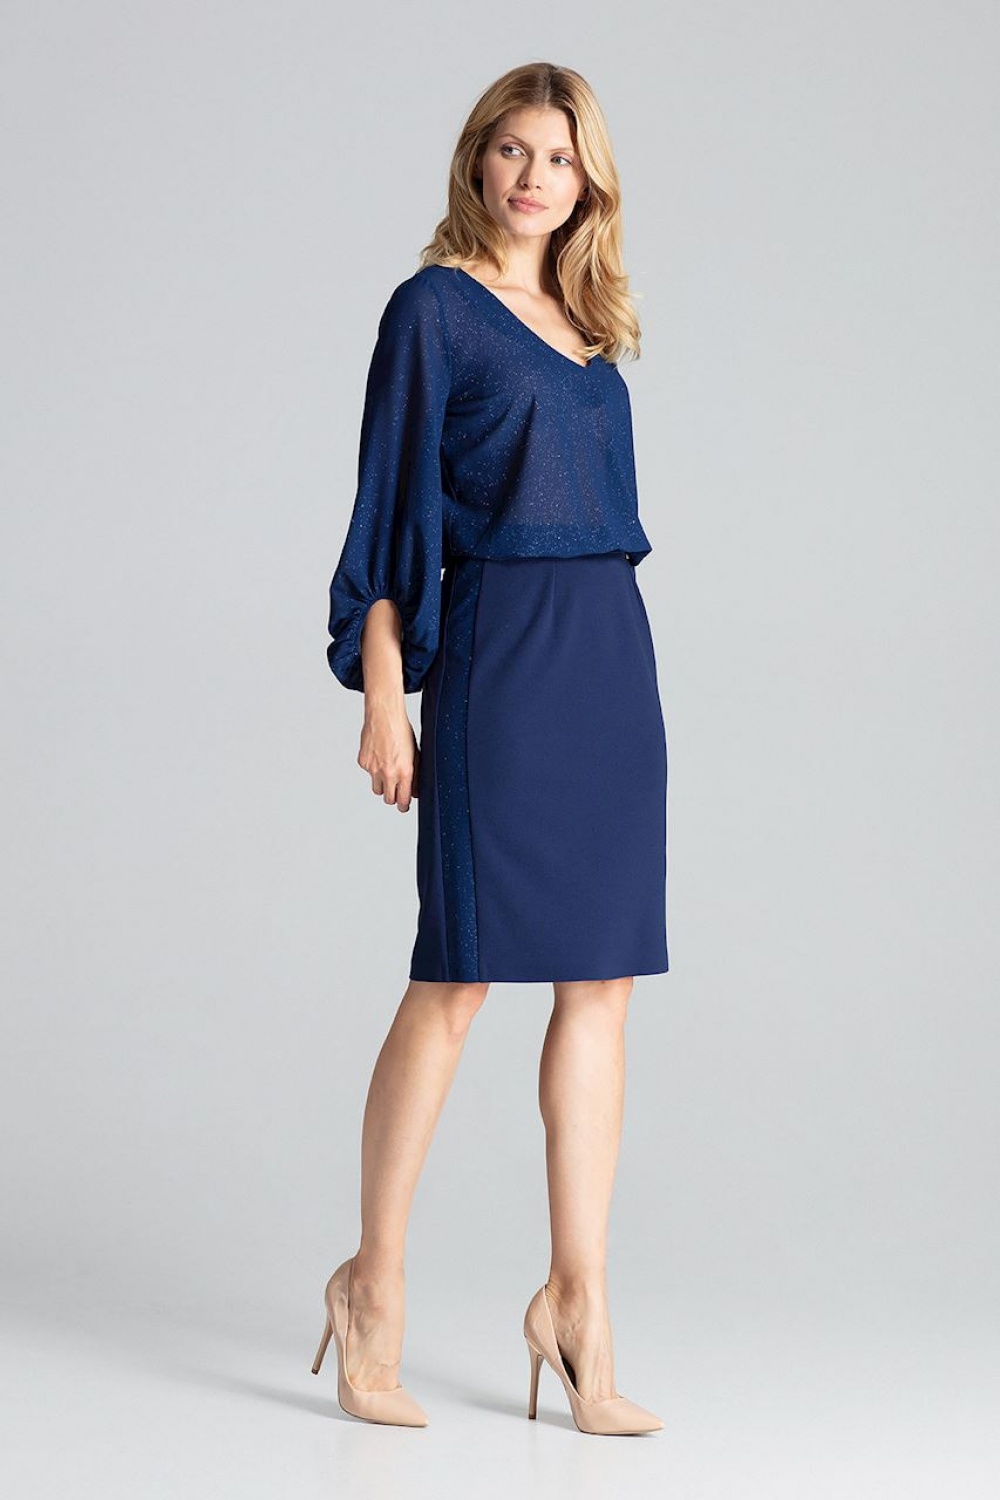  Skirt model 138289 Figl  navy blue